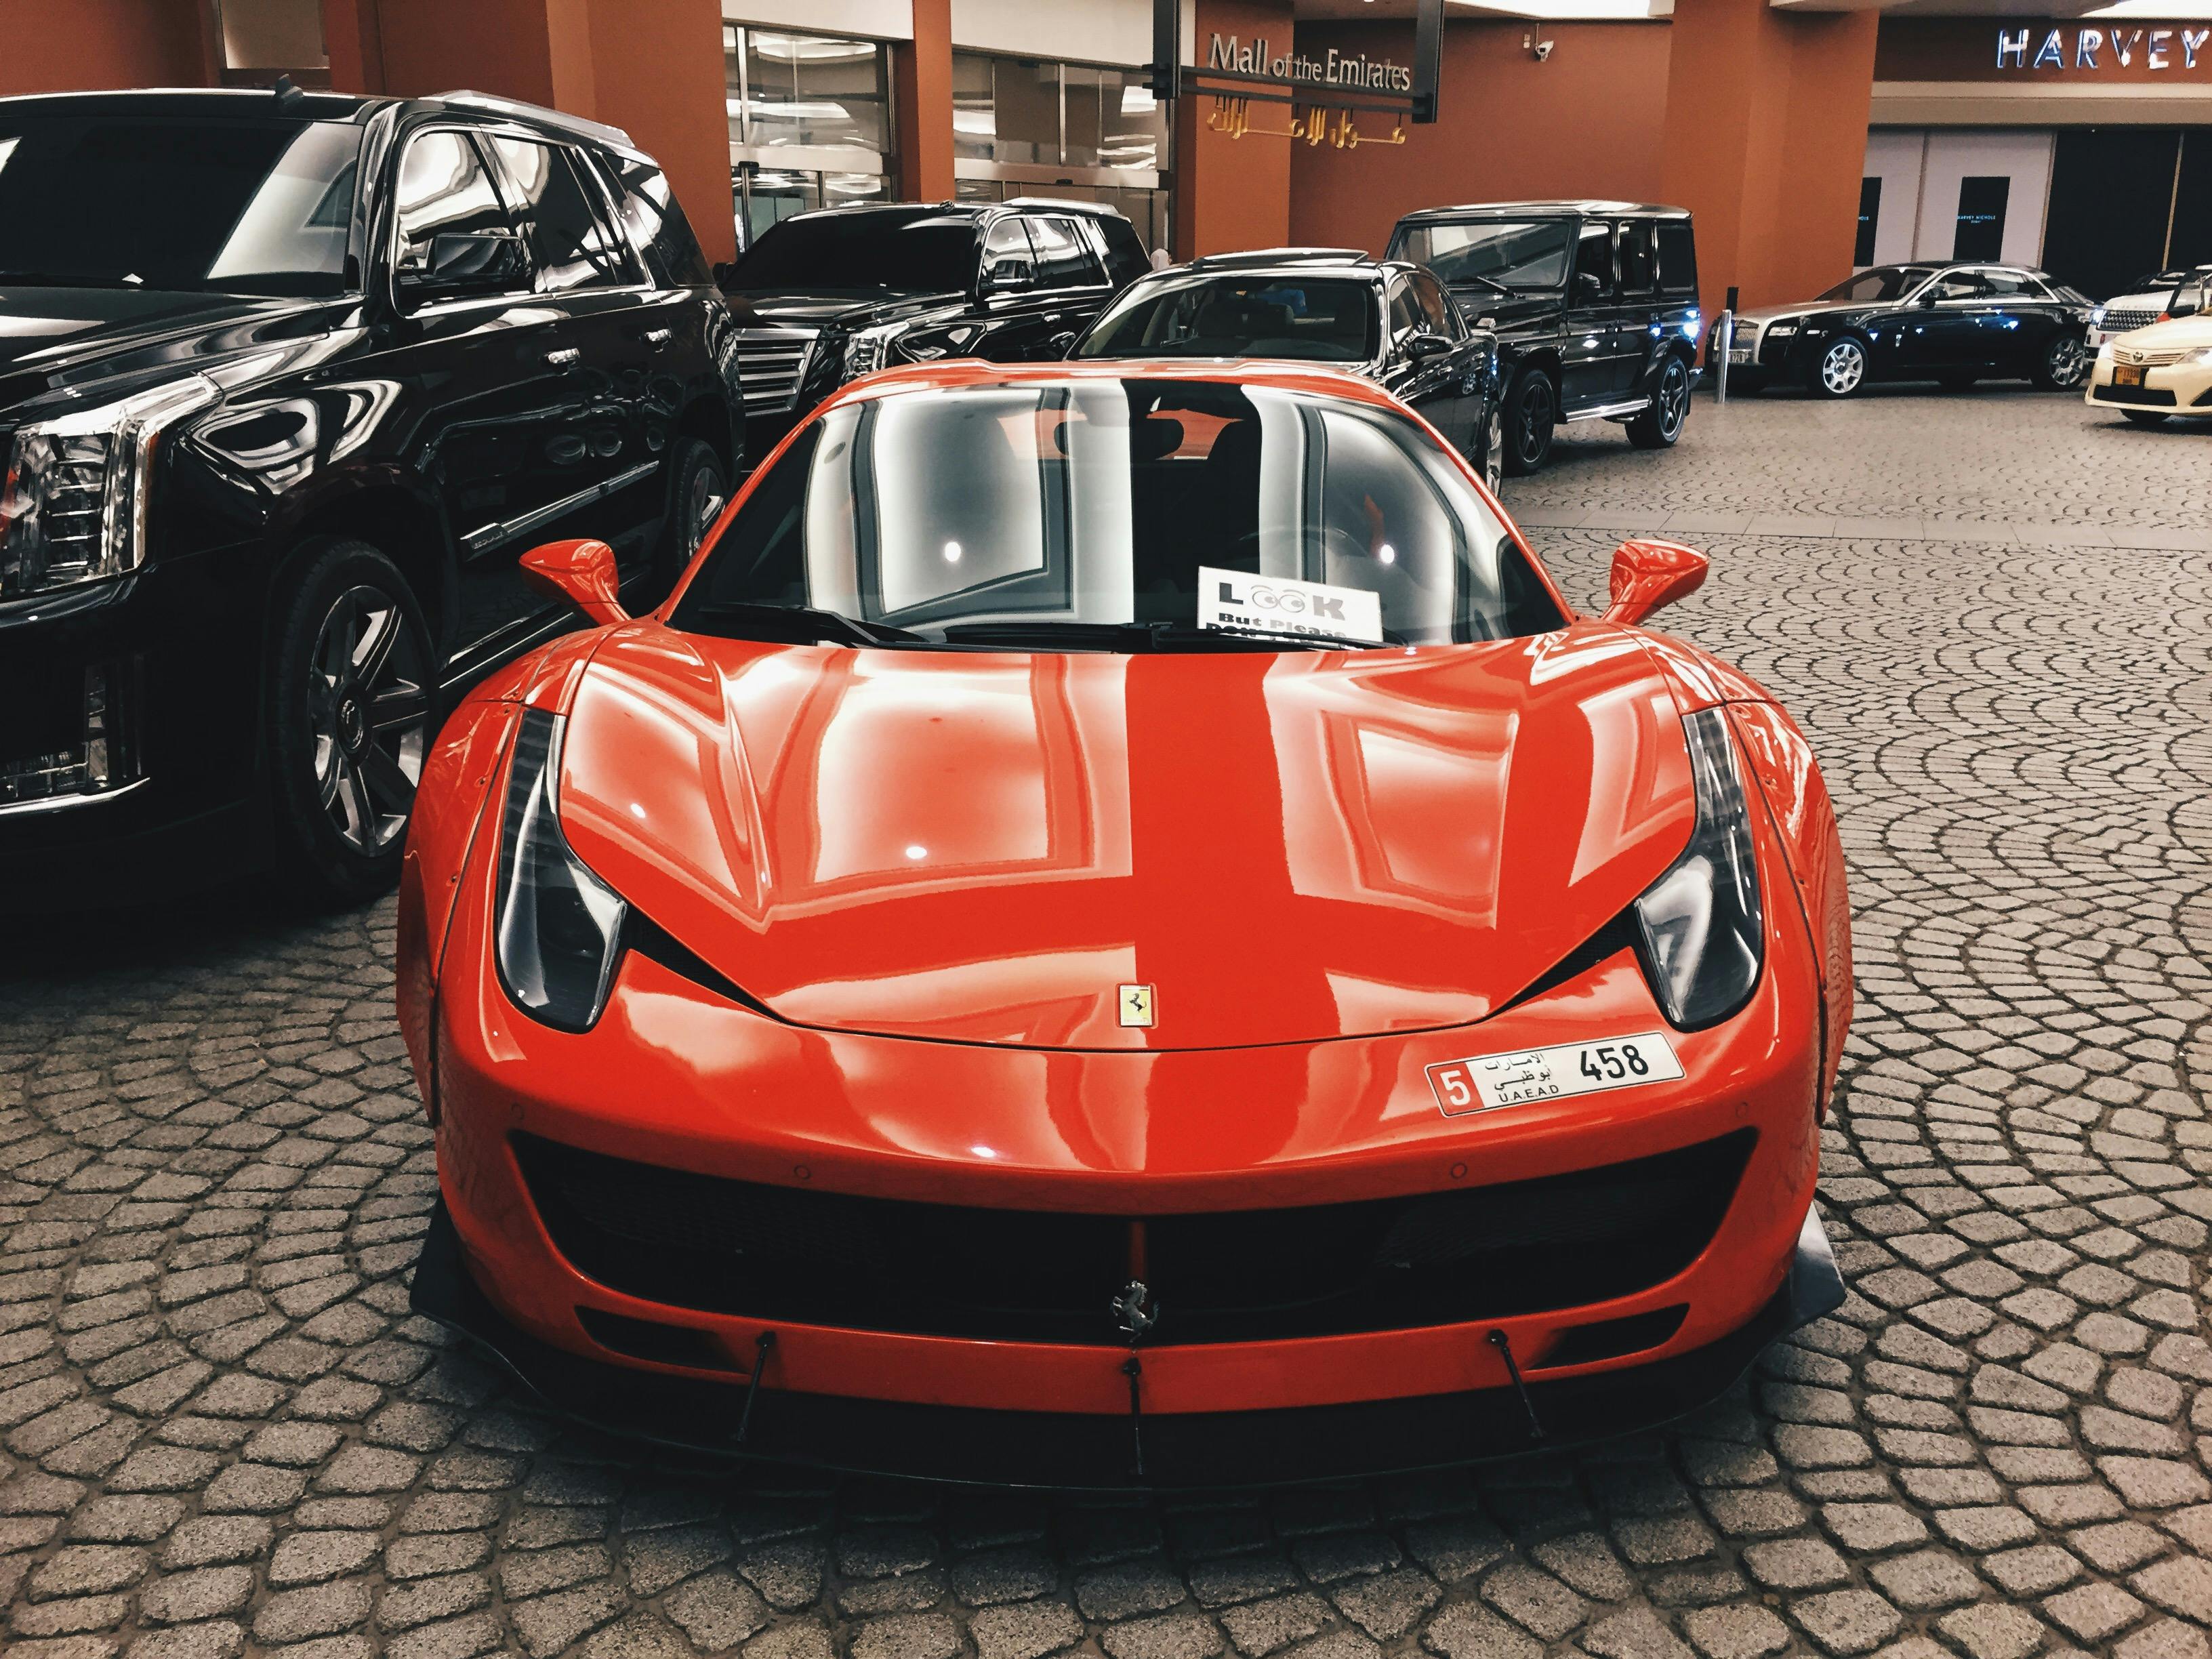 Đam mê với những chiếc xe tốc độ hàng đầu thế giới? Hãy chiêm ngưỡng ngay những hình ảnh liên quan đến xe Ferrari và đắm mình trong thiên đường của những tay lái chuyên nghiệp. Những hình ảnh chắc chắn sẽ khiến bạn cảm thấy hào hứng và say mê. 